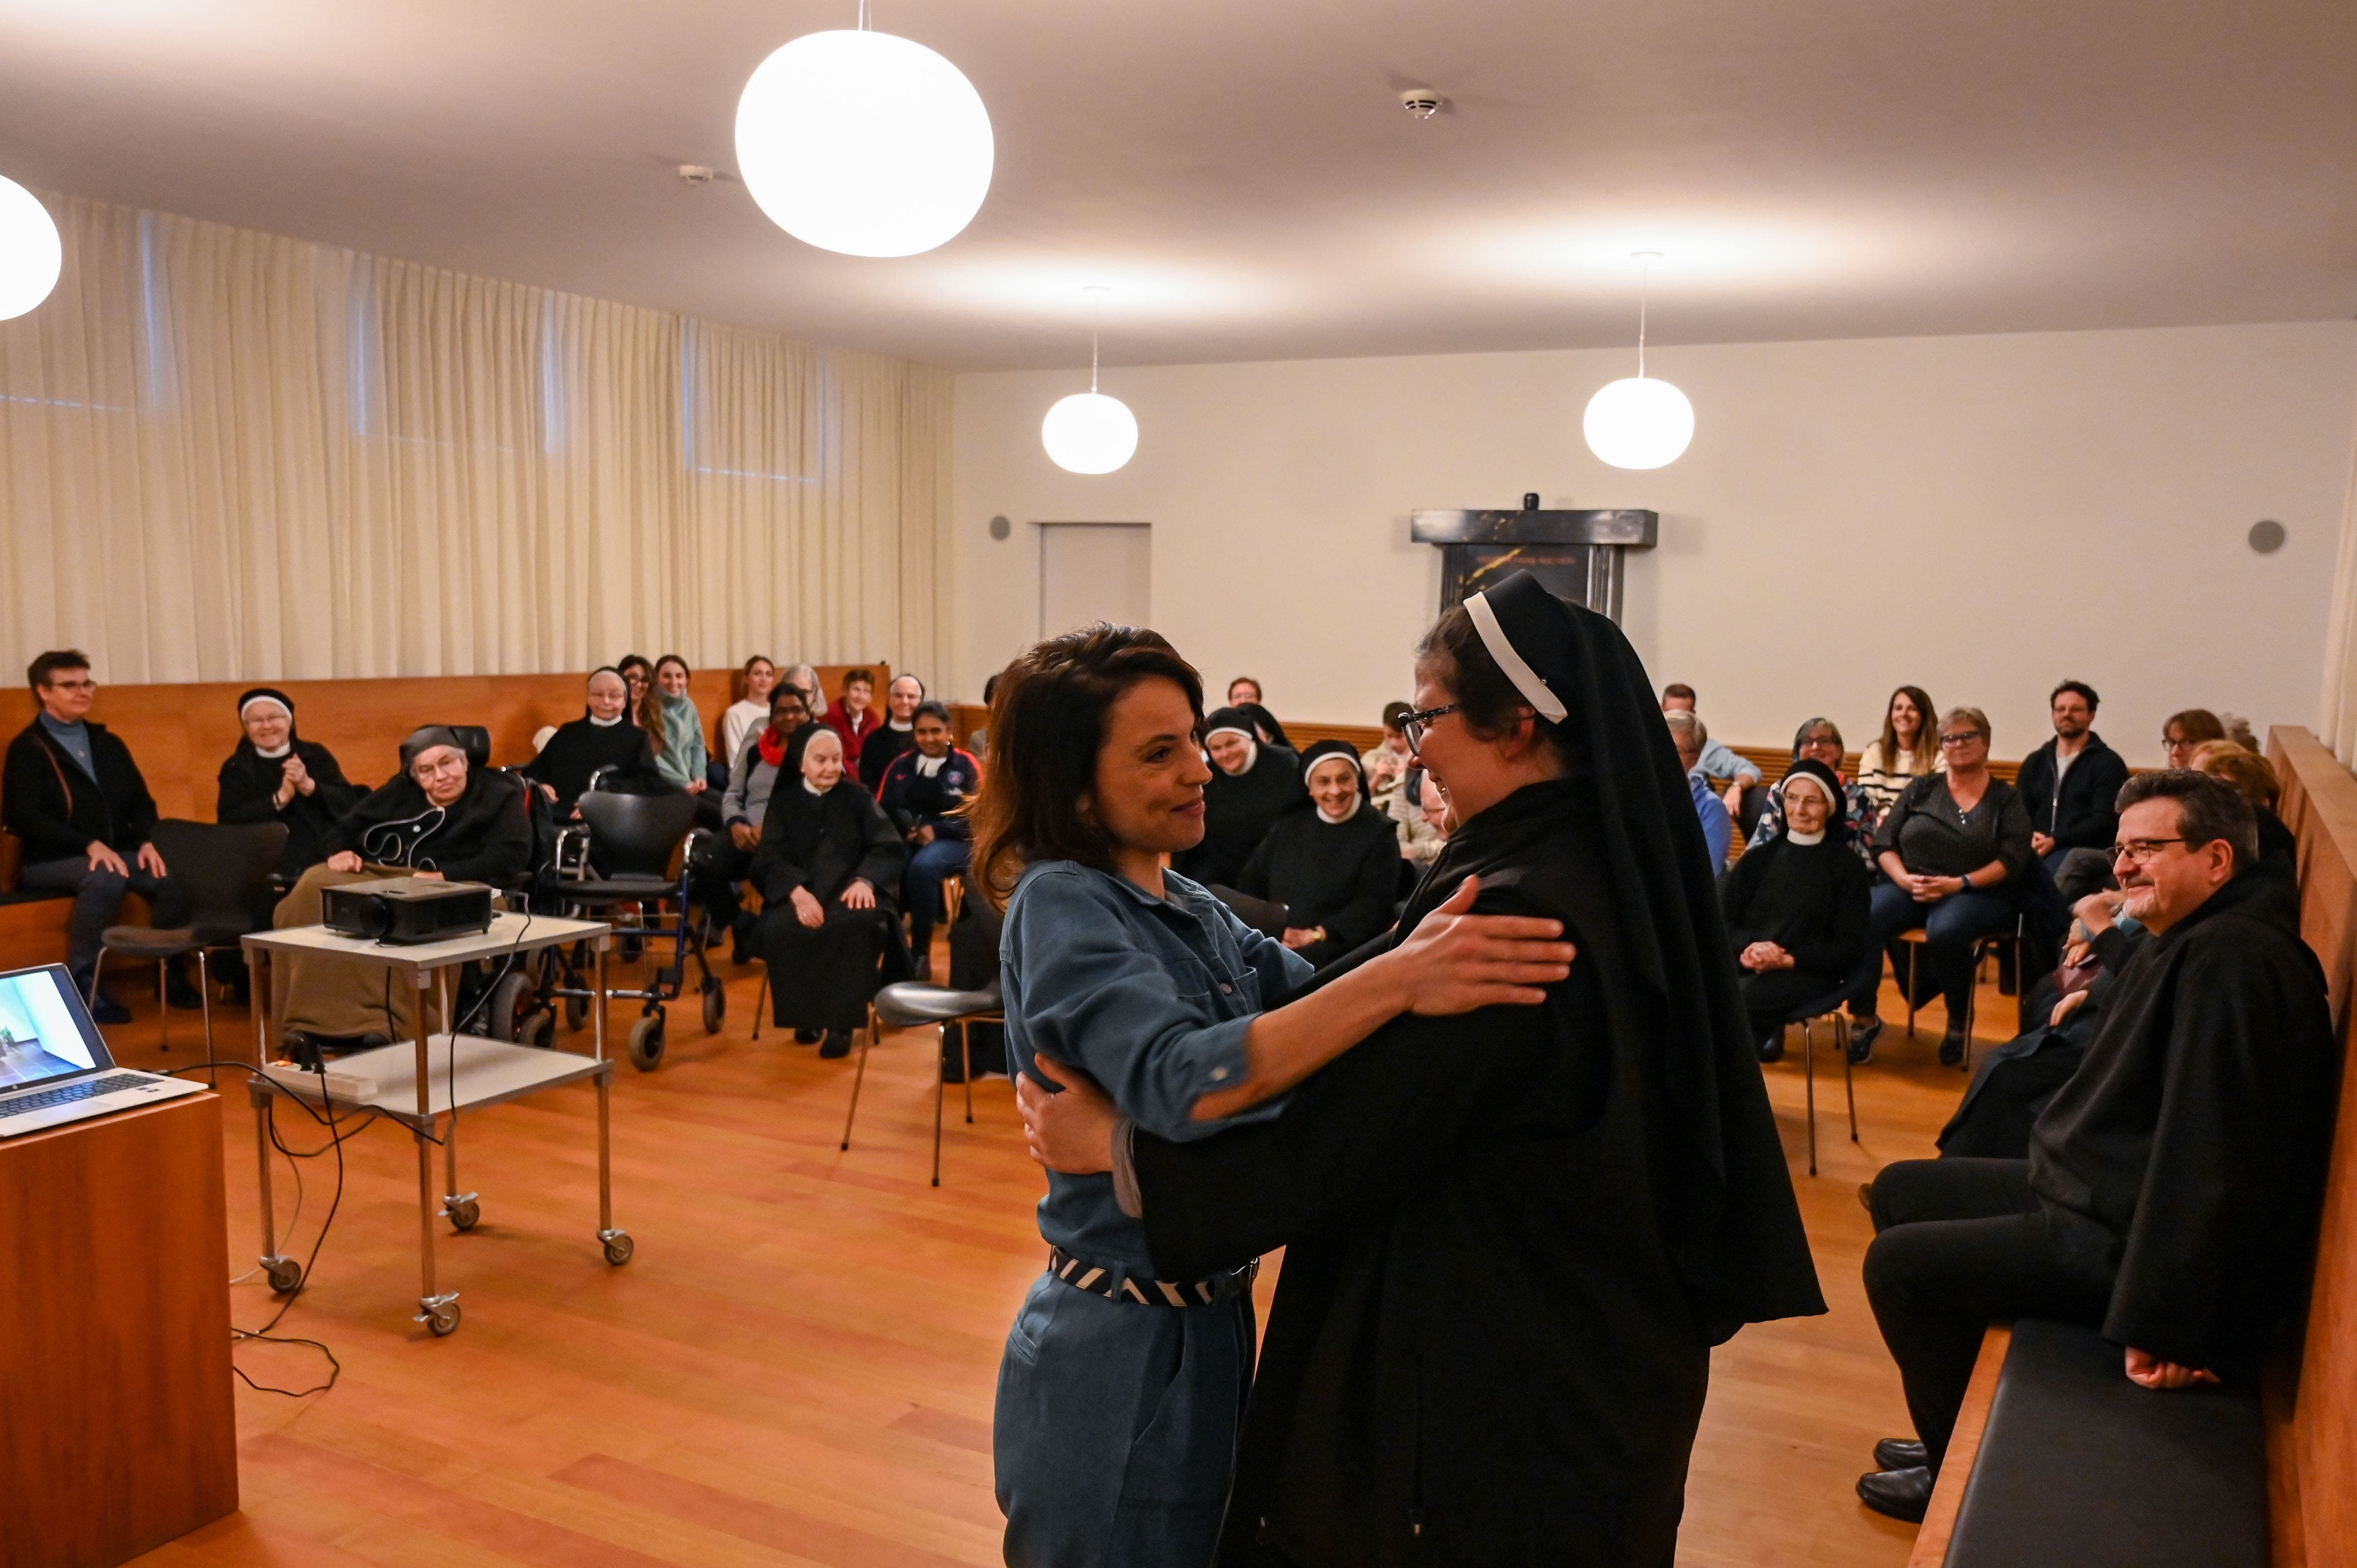 Freuen sich über das gemeinsame Werk: Mona Vetsch und Äbtissin Rut-Maria Buschor nach der Vorpremiere im Kapitelsaal des Klosters Sarnen.